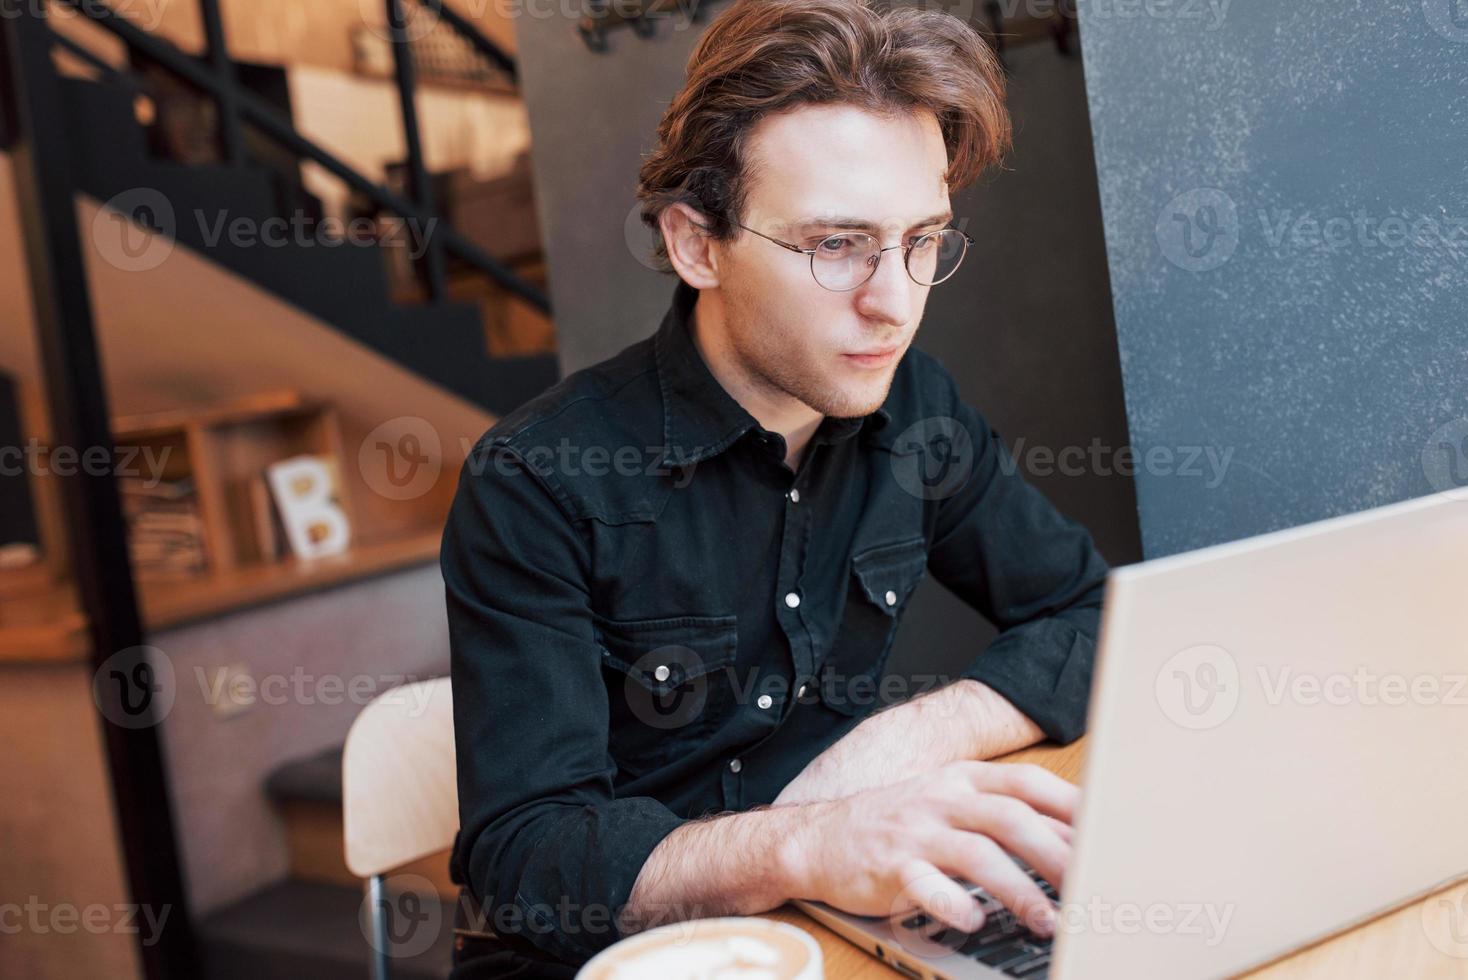 designer uomo creativo che lavora sul suo computer portatile mentre aspetta gli ordini al suo bar preferito al chiuso, studente maschio che lavora su net-book durante la colazione mattutina nell'interno moderno della caffetteria foto